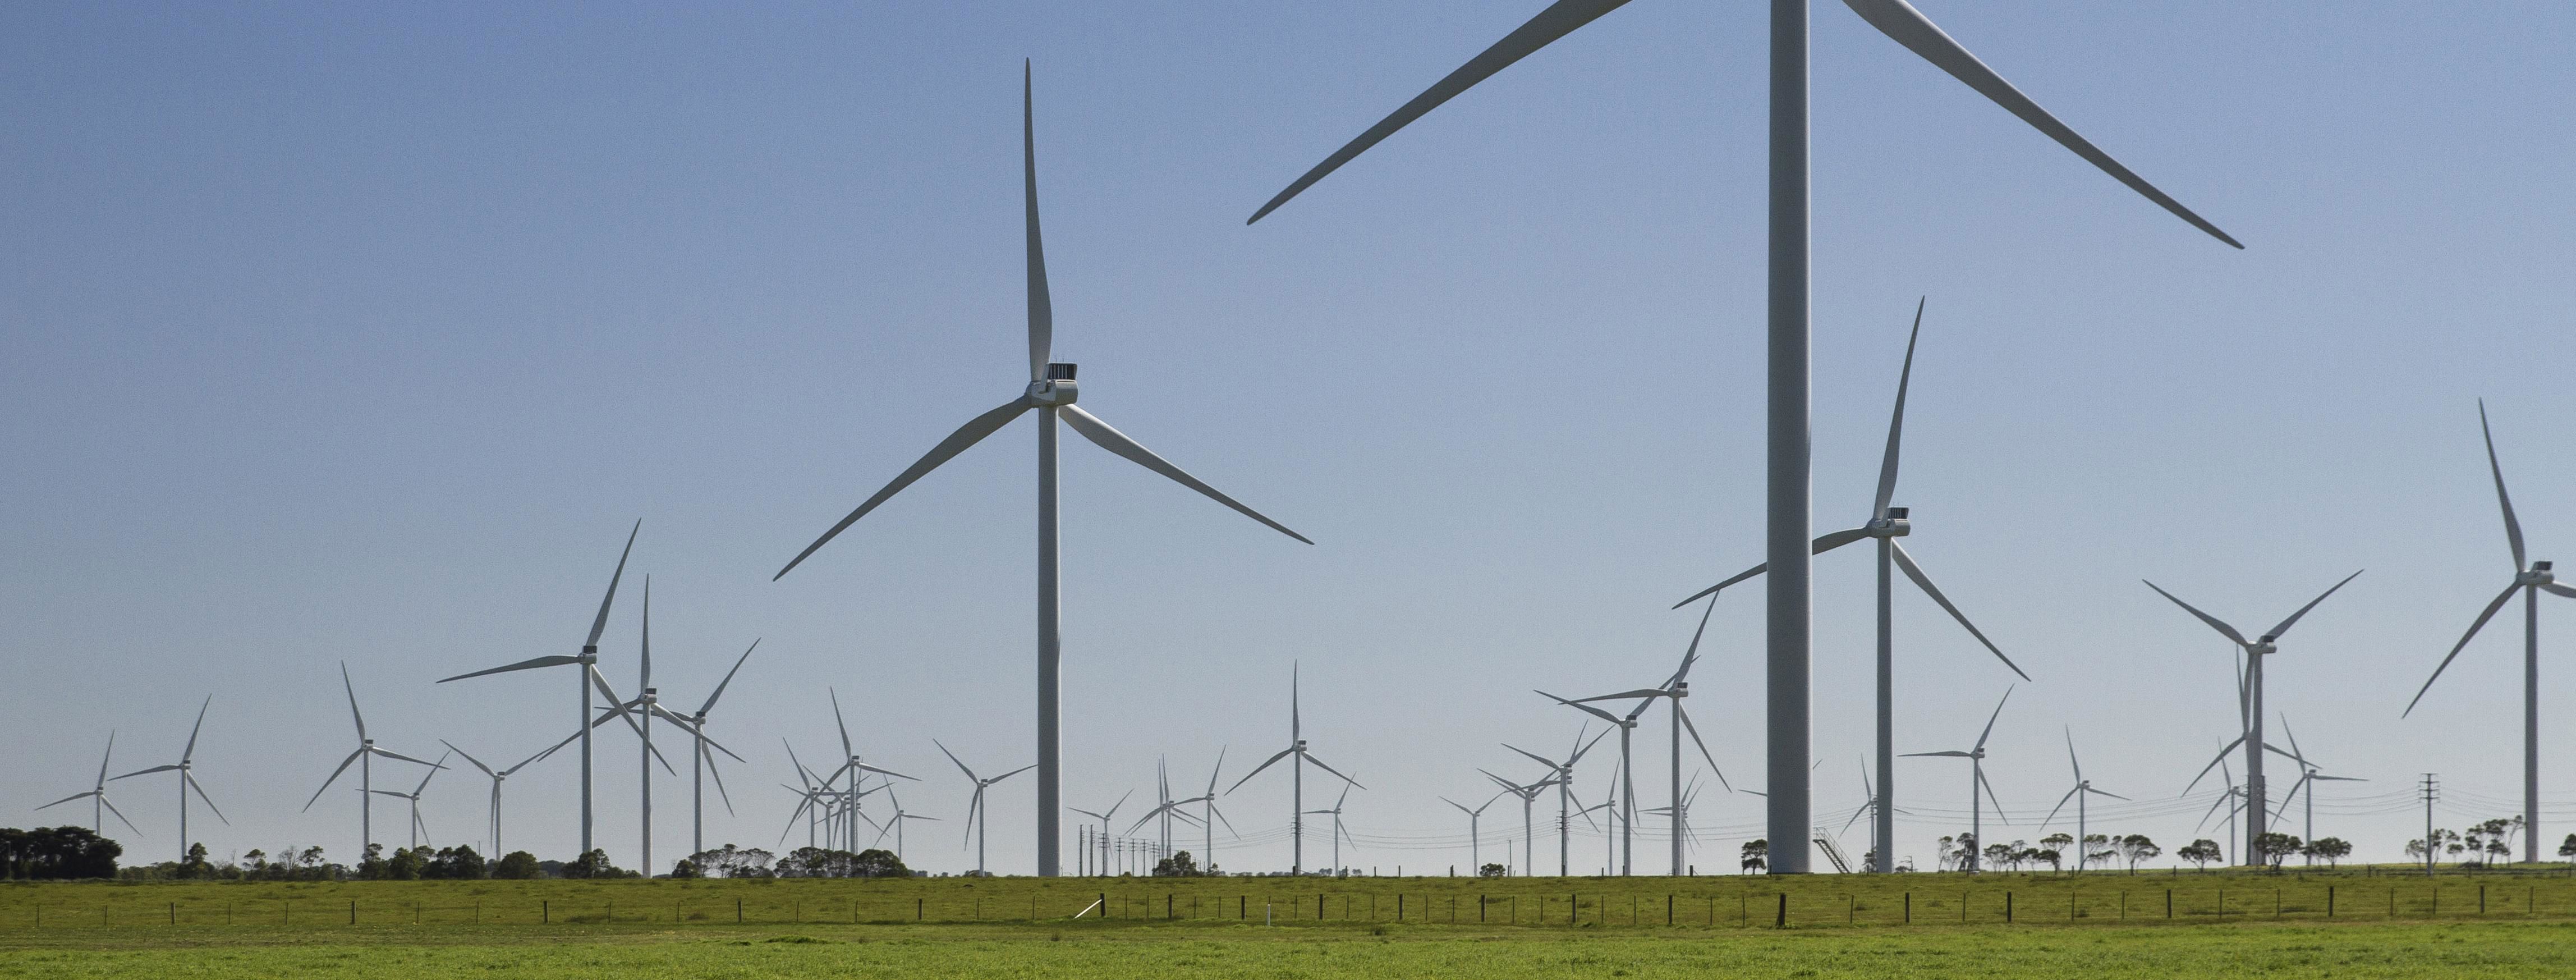 Macarthur Wind Farm offers financing model